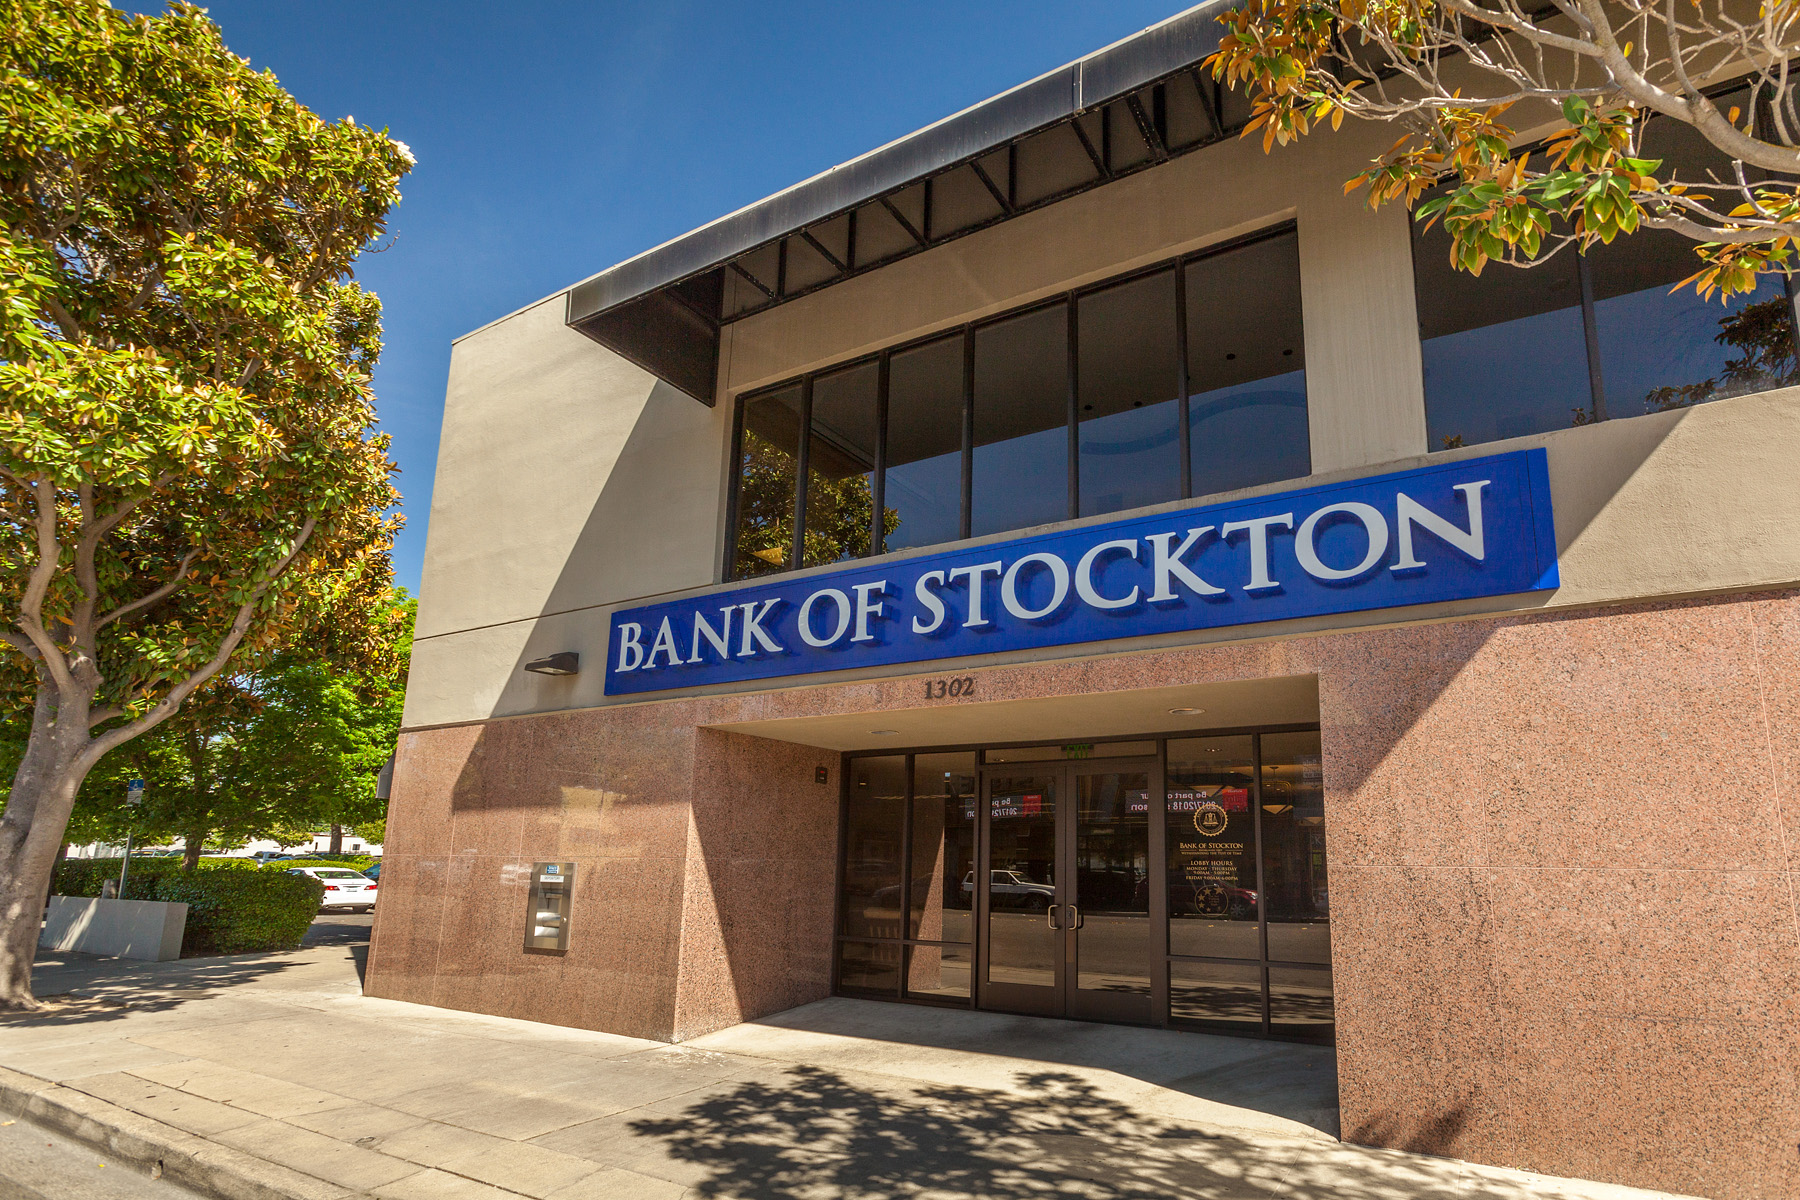 Bank of Stockton (Modesto Main Branch)